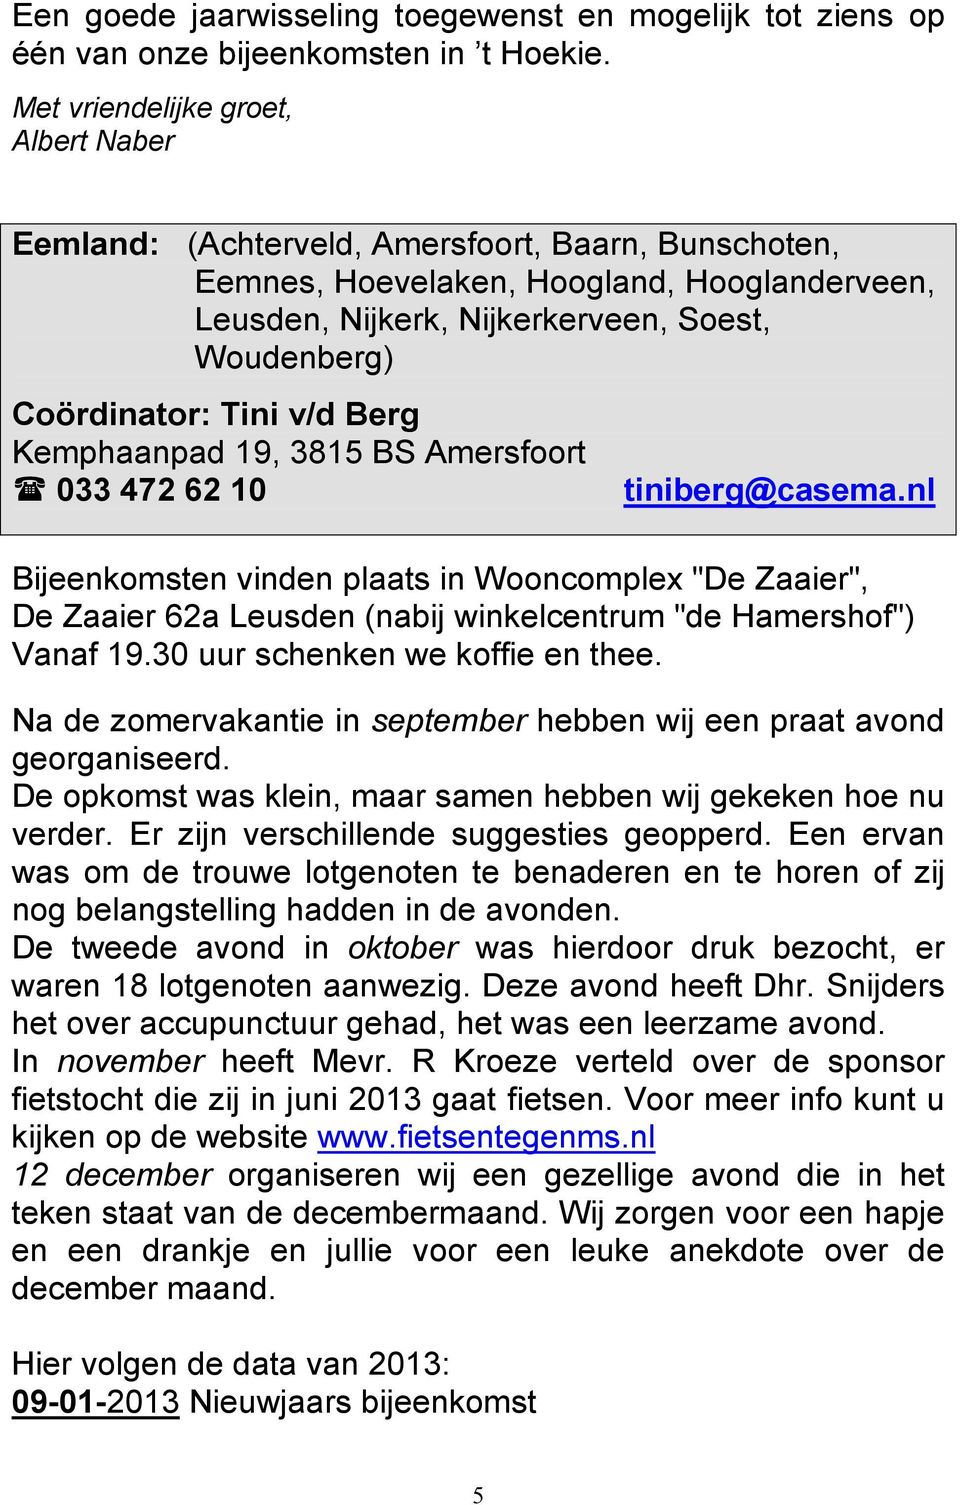 Coördinator: Tini v/d Berg Kemphaanpad 19, 3815 BS Amersfoort 033 472 62 10 Bijeenkomsten vinden plaats in Wooncomplex "De Zaaier", De Zaaier 62a Leusden (nabij winkelcentrum "de Hamershof") Vanaf 19.